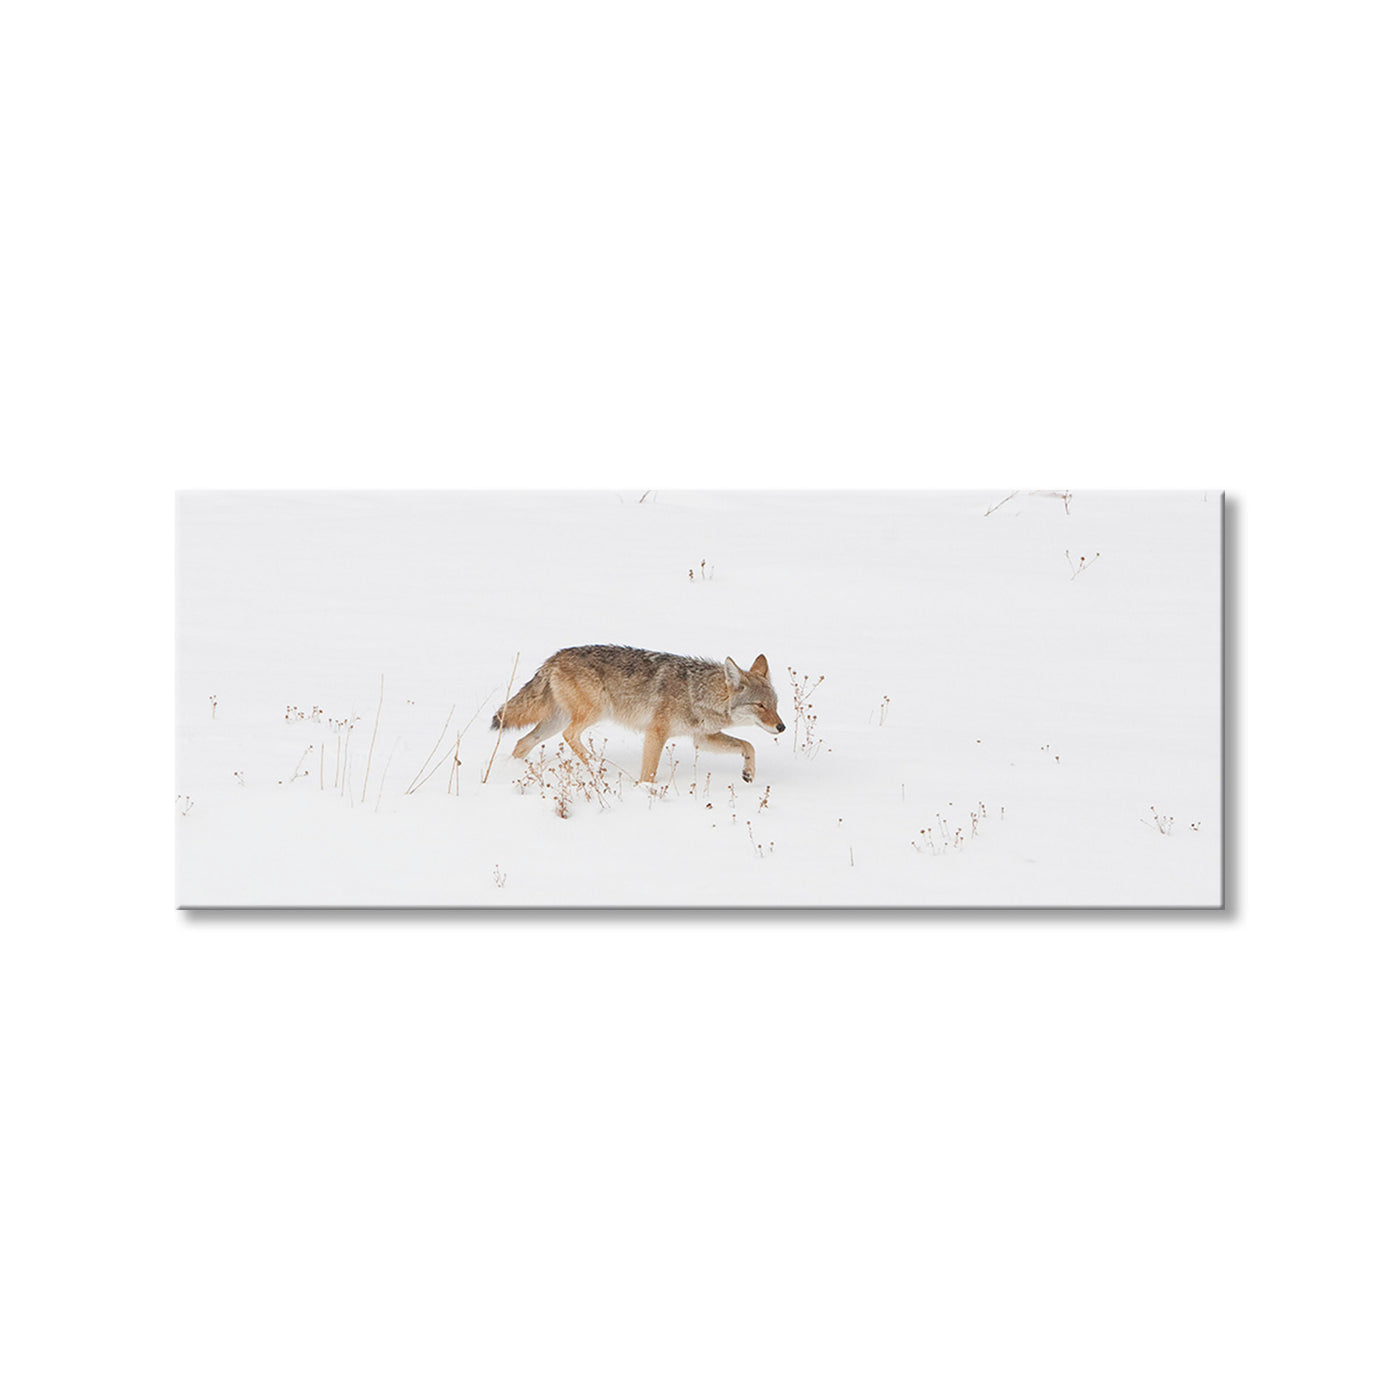 Coyote Snow